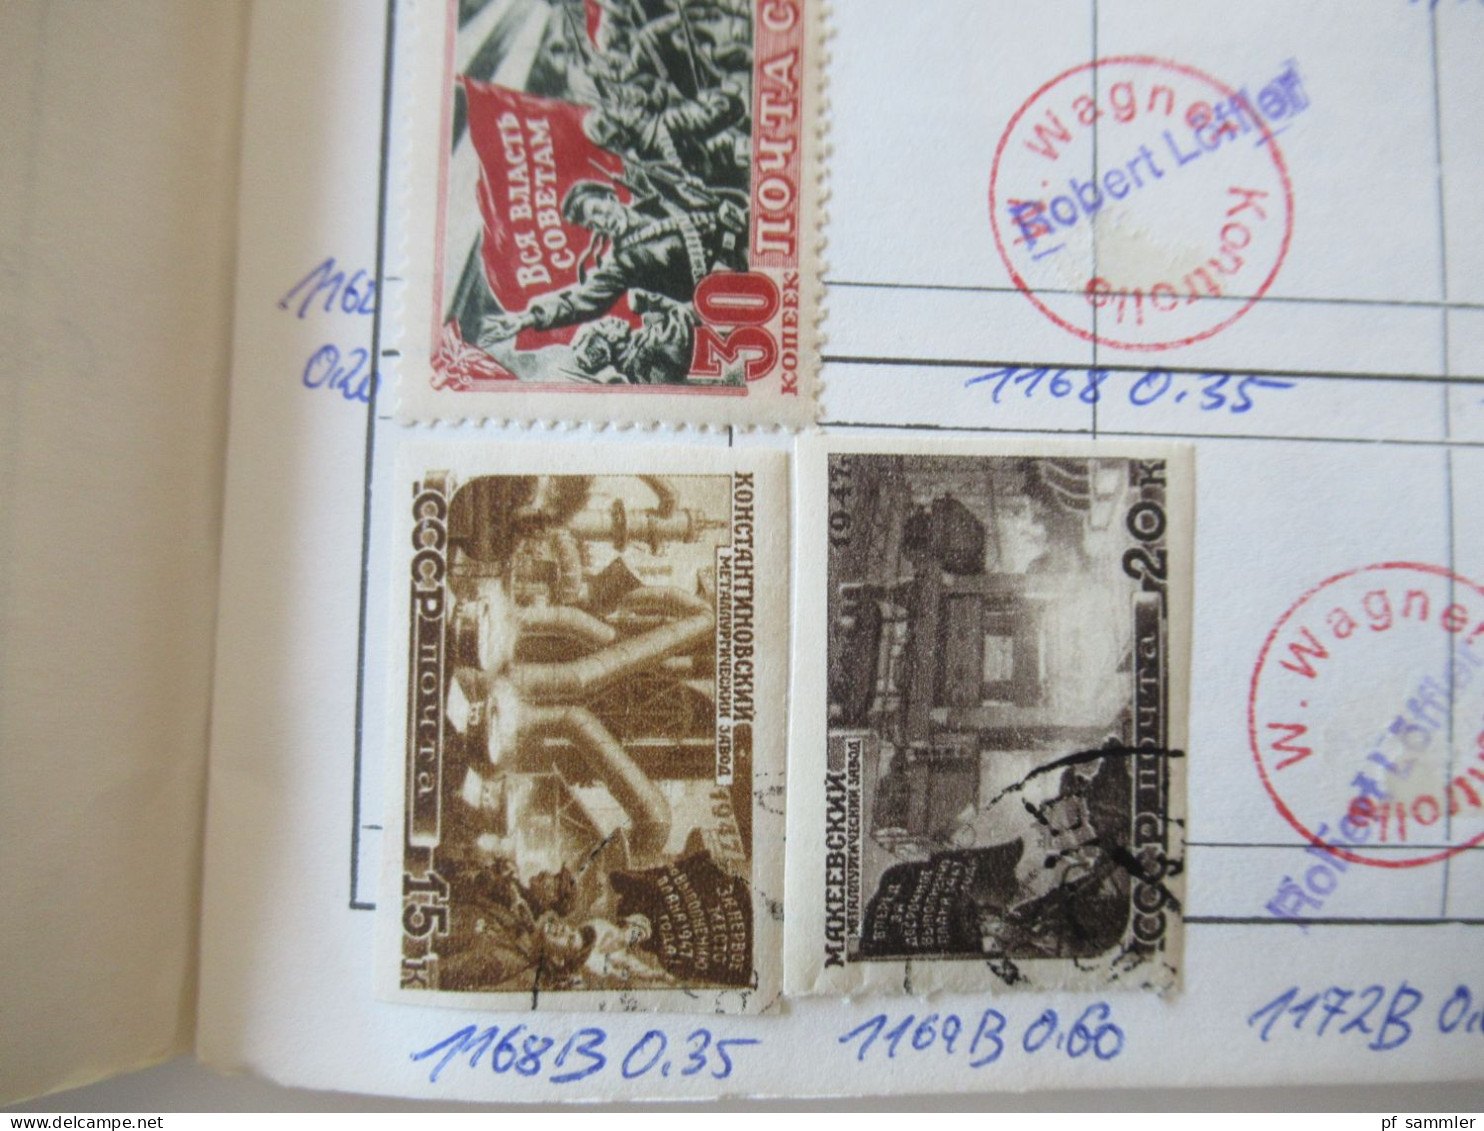 Sammlung / interessante Auswahlhefte Russland UdSSR ab ca. 1900 - 1972 viele gestempelte Marken / Fundgrube!?!